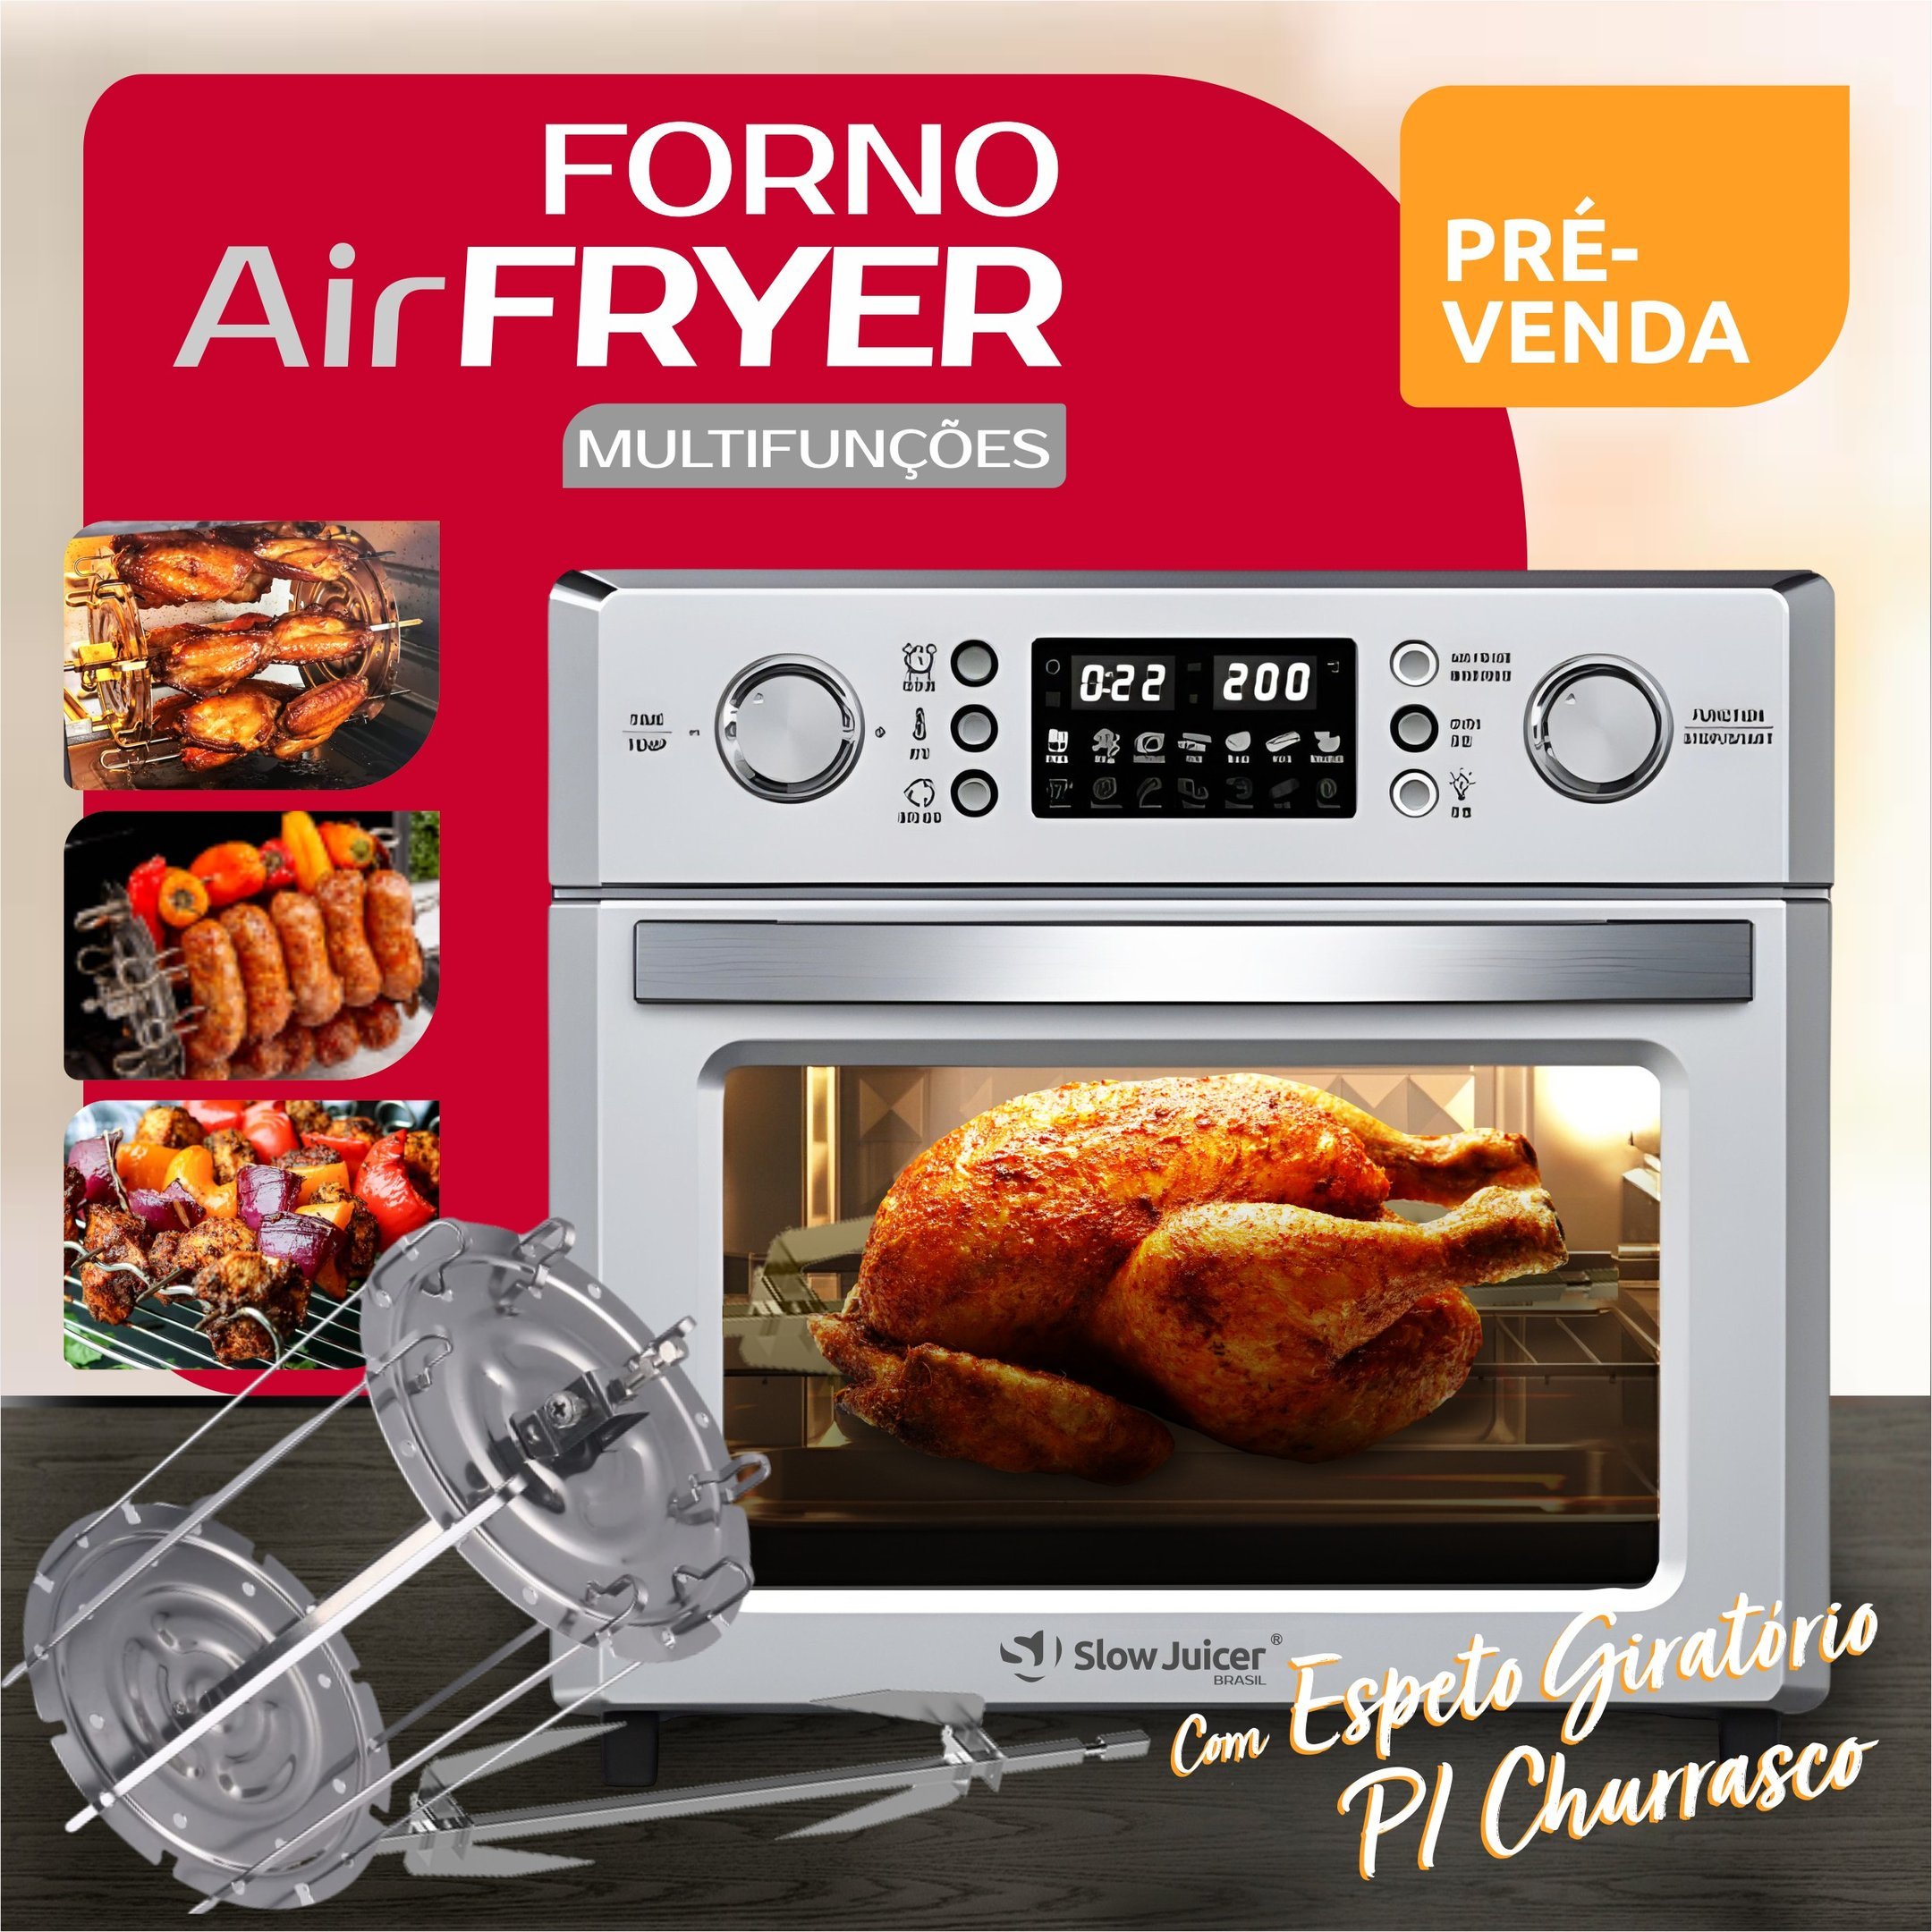 Forno Air Fryer c/ Espeto para Churrasco - 220v - 4